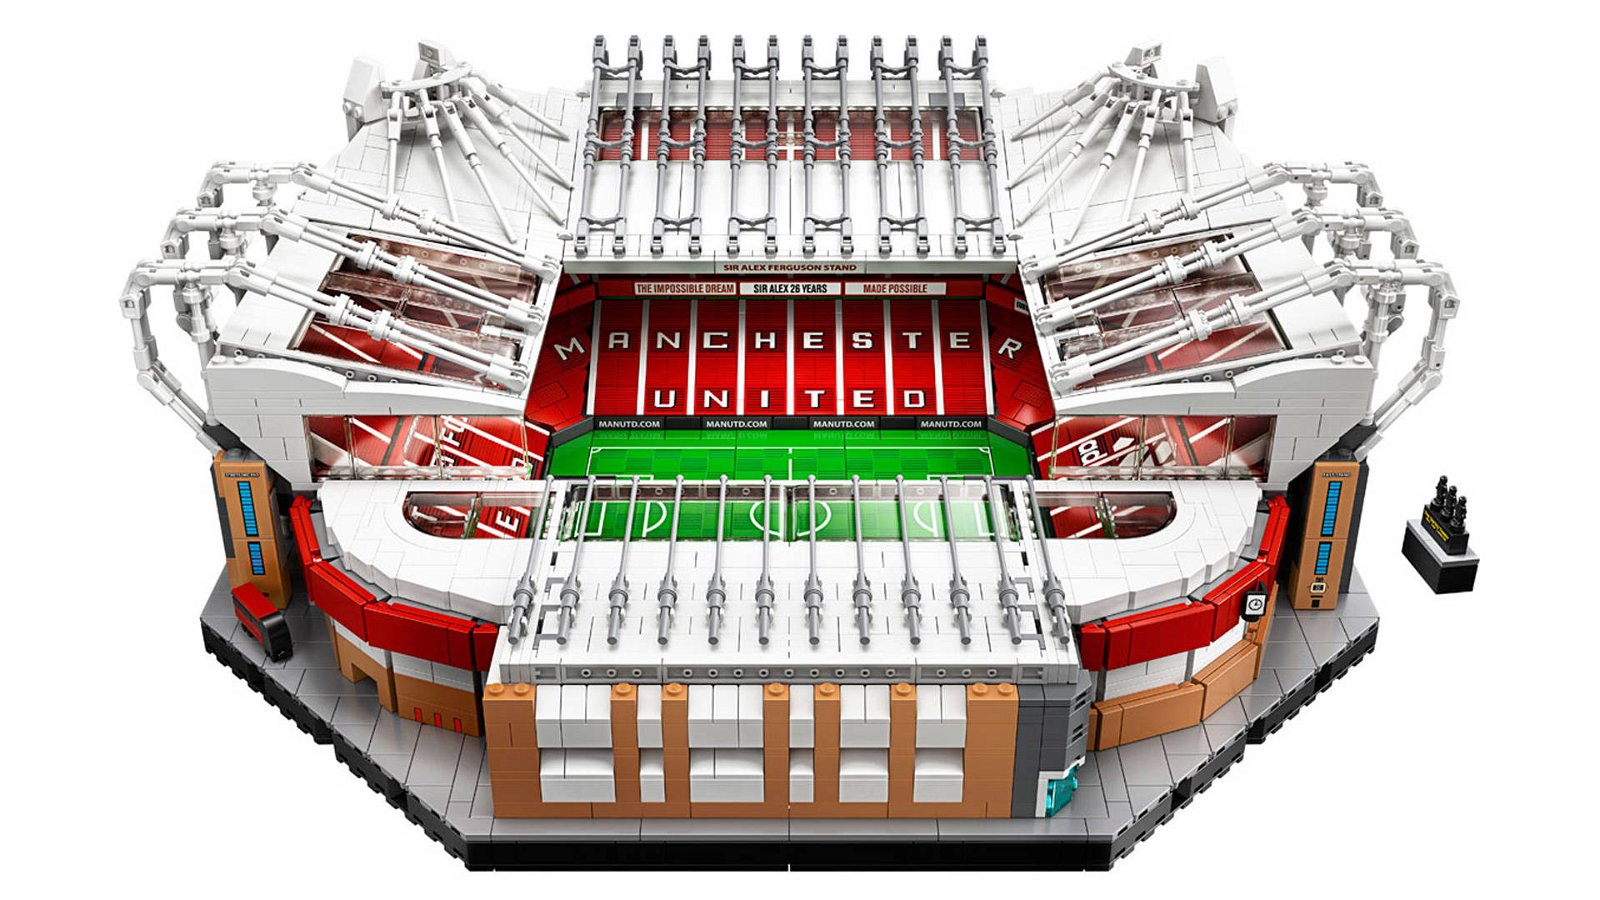 Immagine di LEGO: svelate le immagini del set 10272 stadio Old Trafford